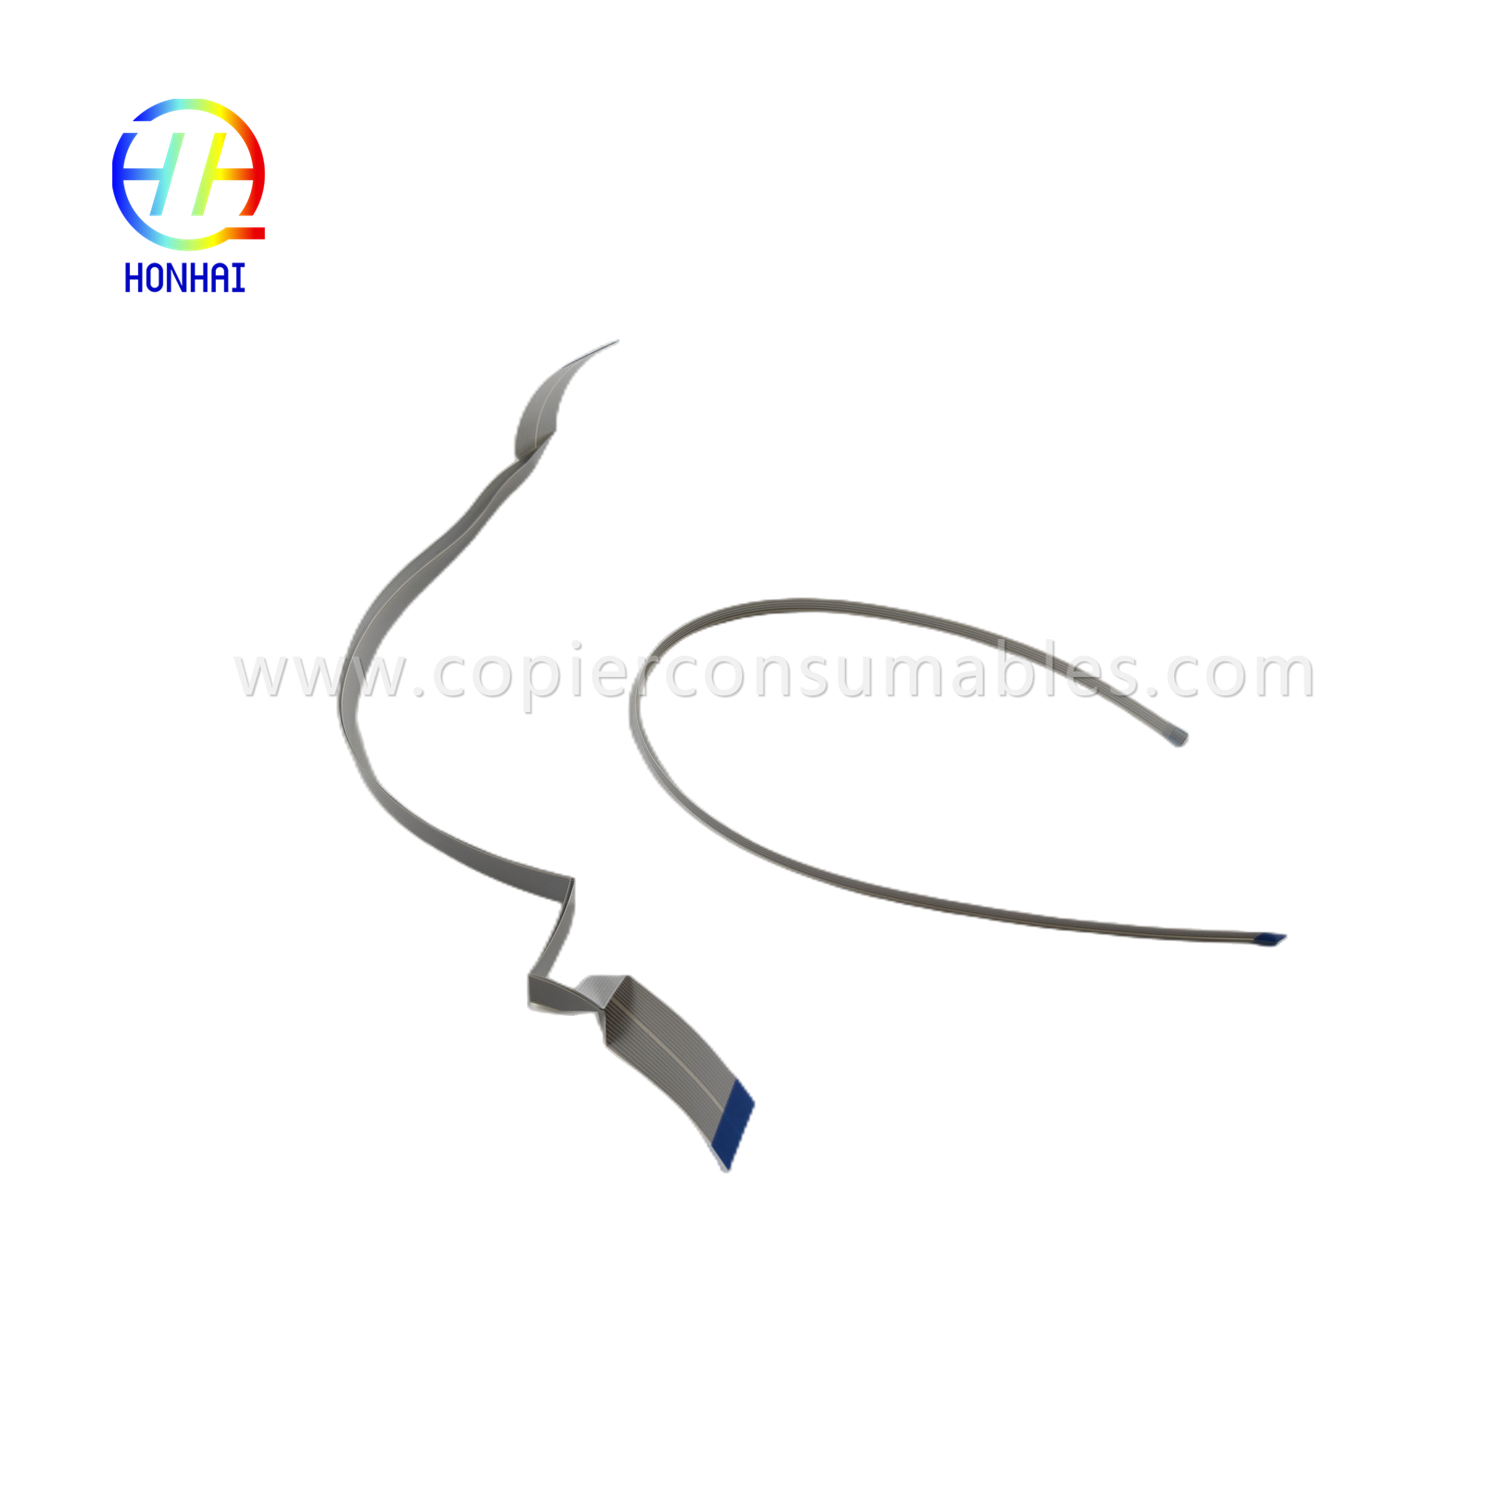 https://www.copierconsumables.com/flex-cable-for-epson-l1110-l3110-l3210-l3150-l3250-l5190-l5290-head-able-product/